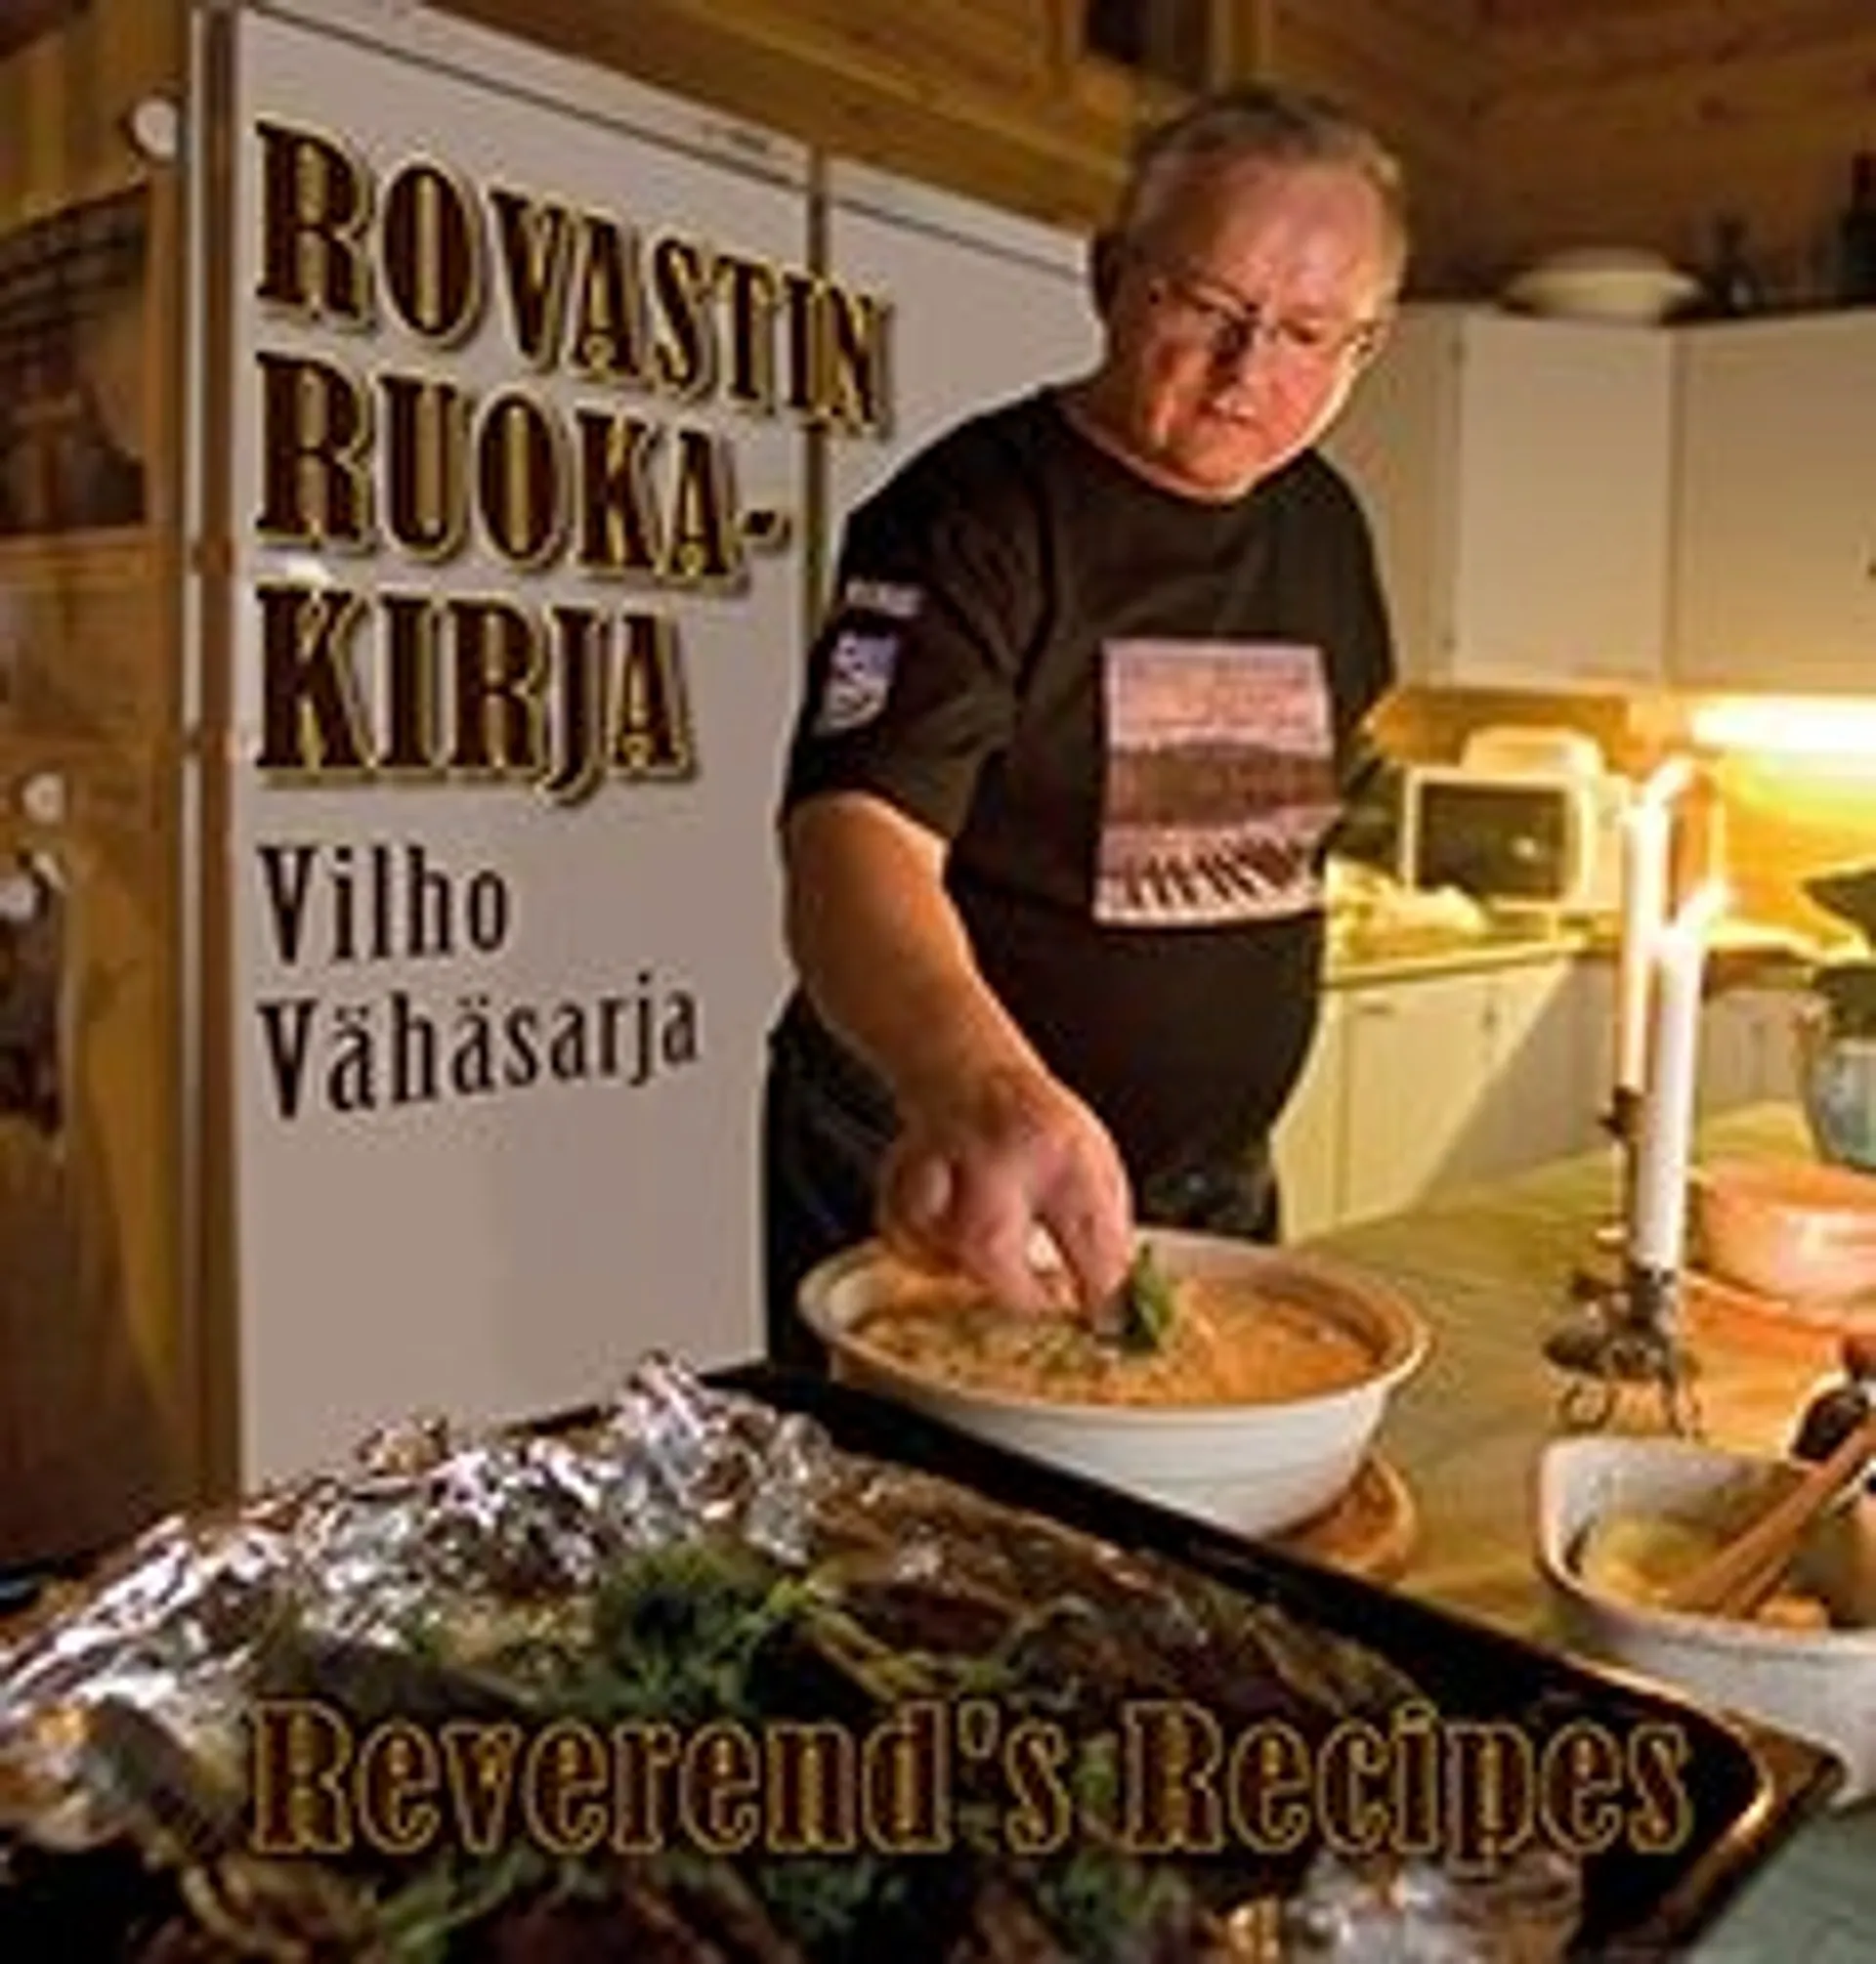 Vähäsarja, Rovastin ruokakirja - Reverend's Recipes